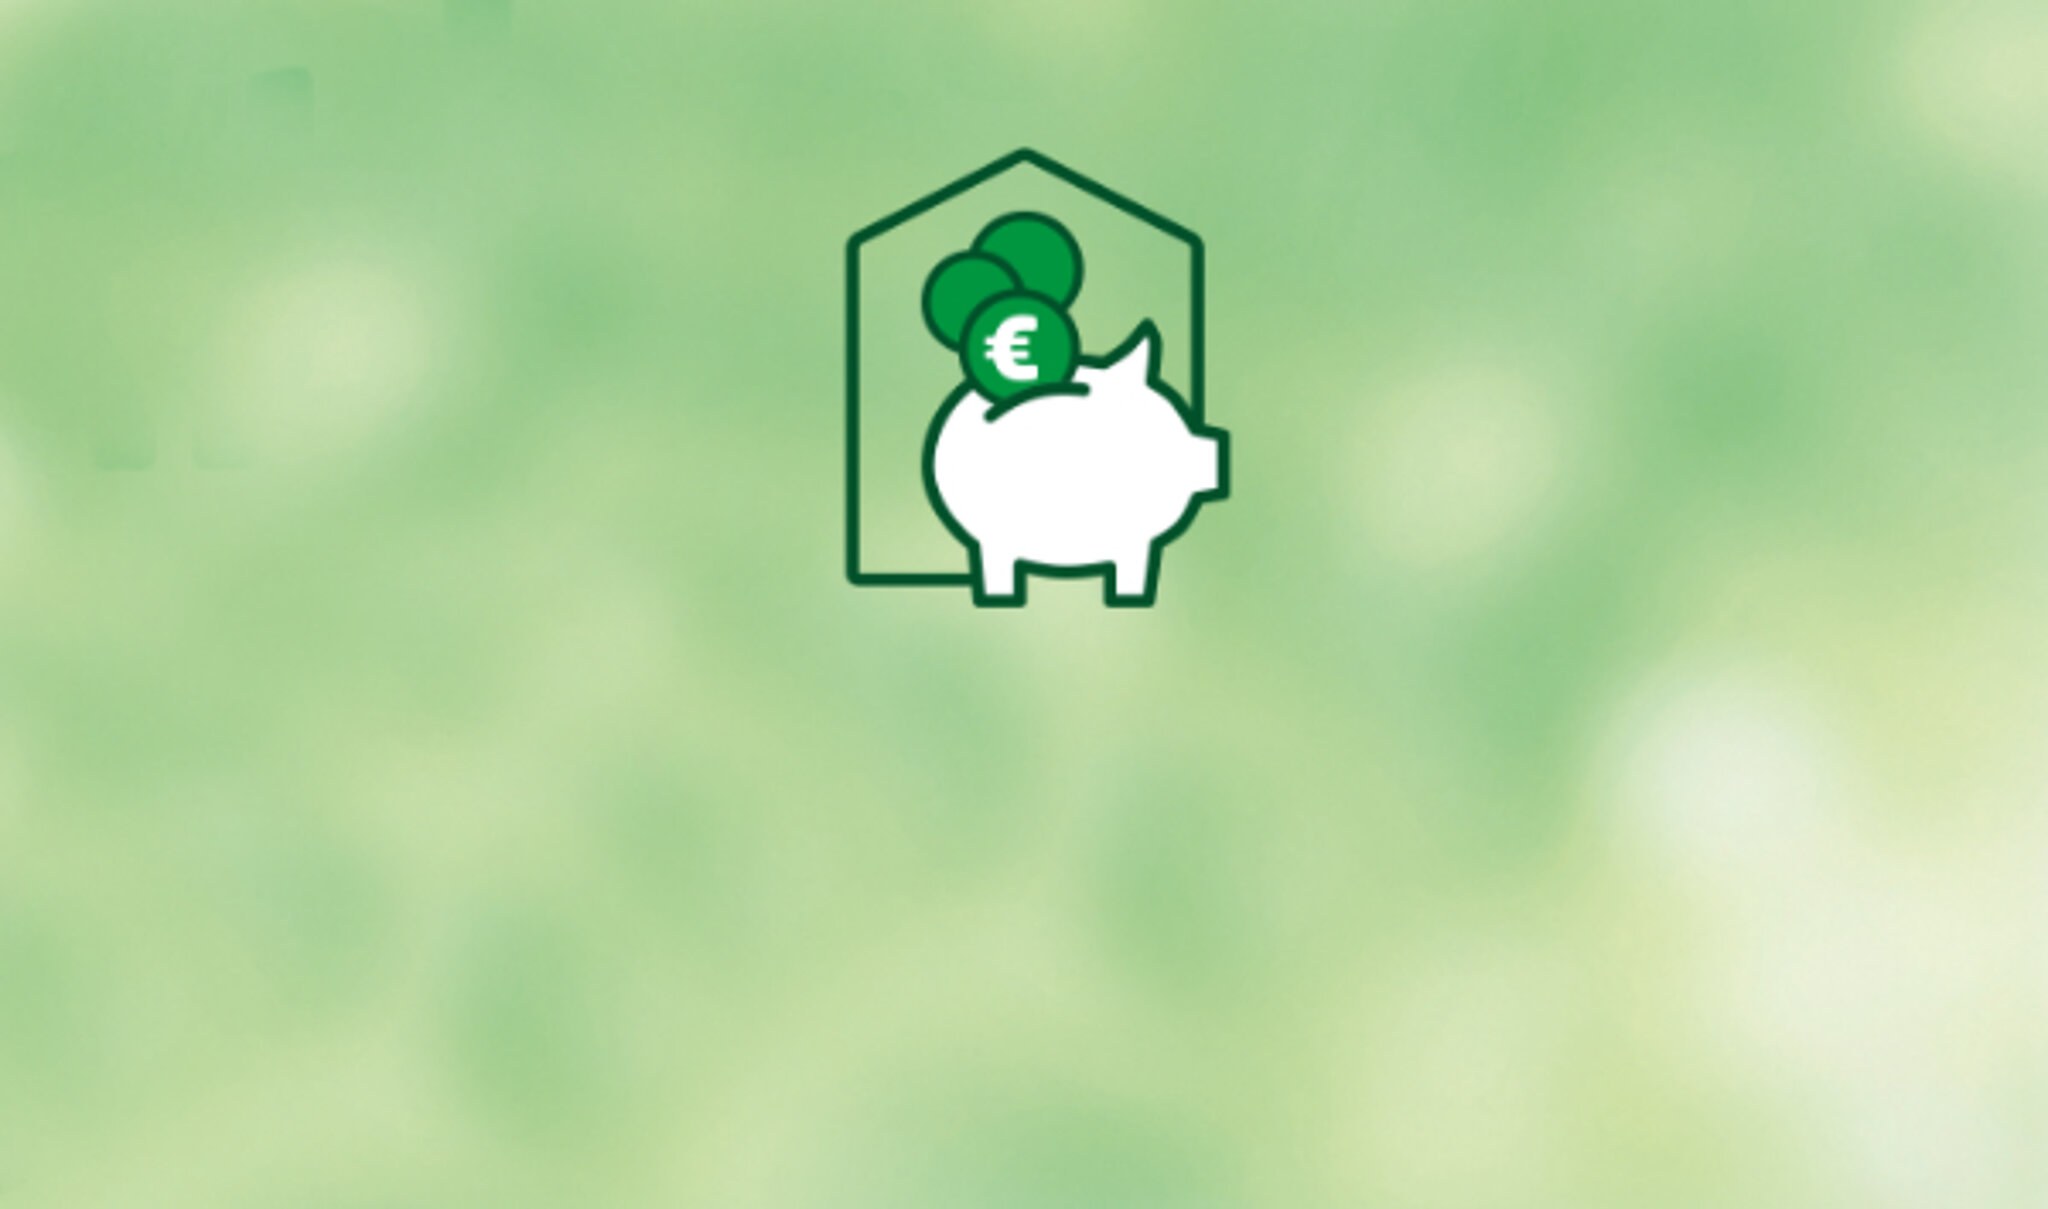 grüner Hintergrund mit Icon zum Thema Energiesparrechner